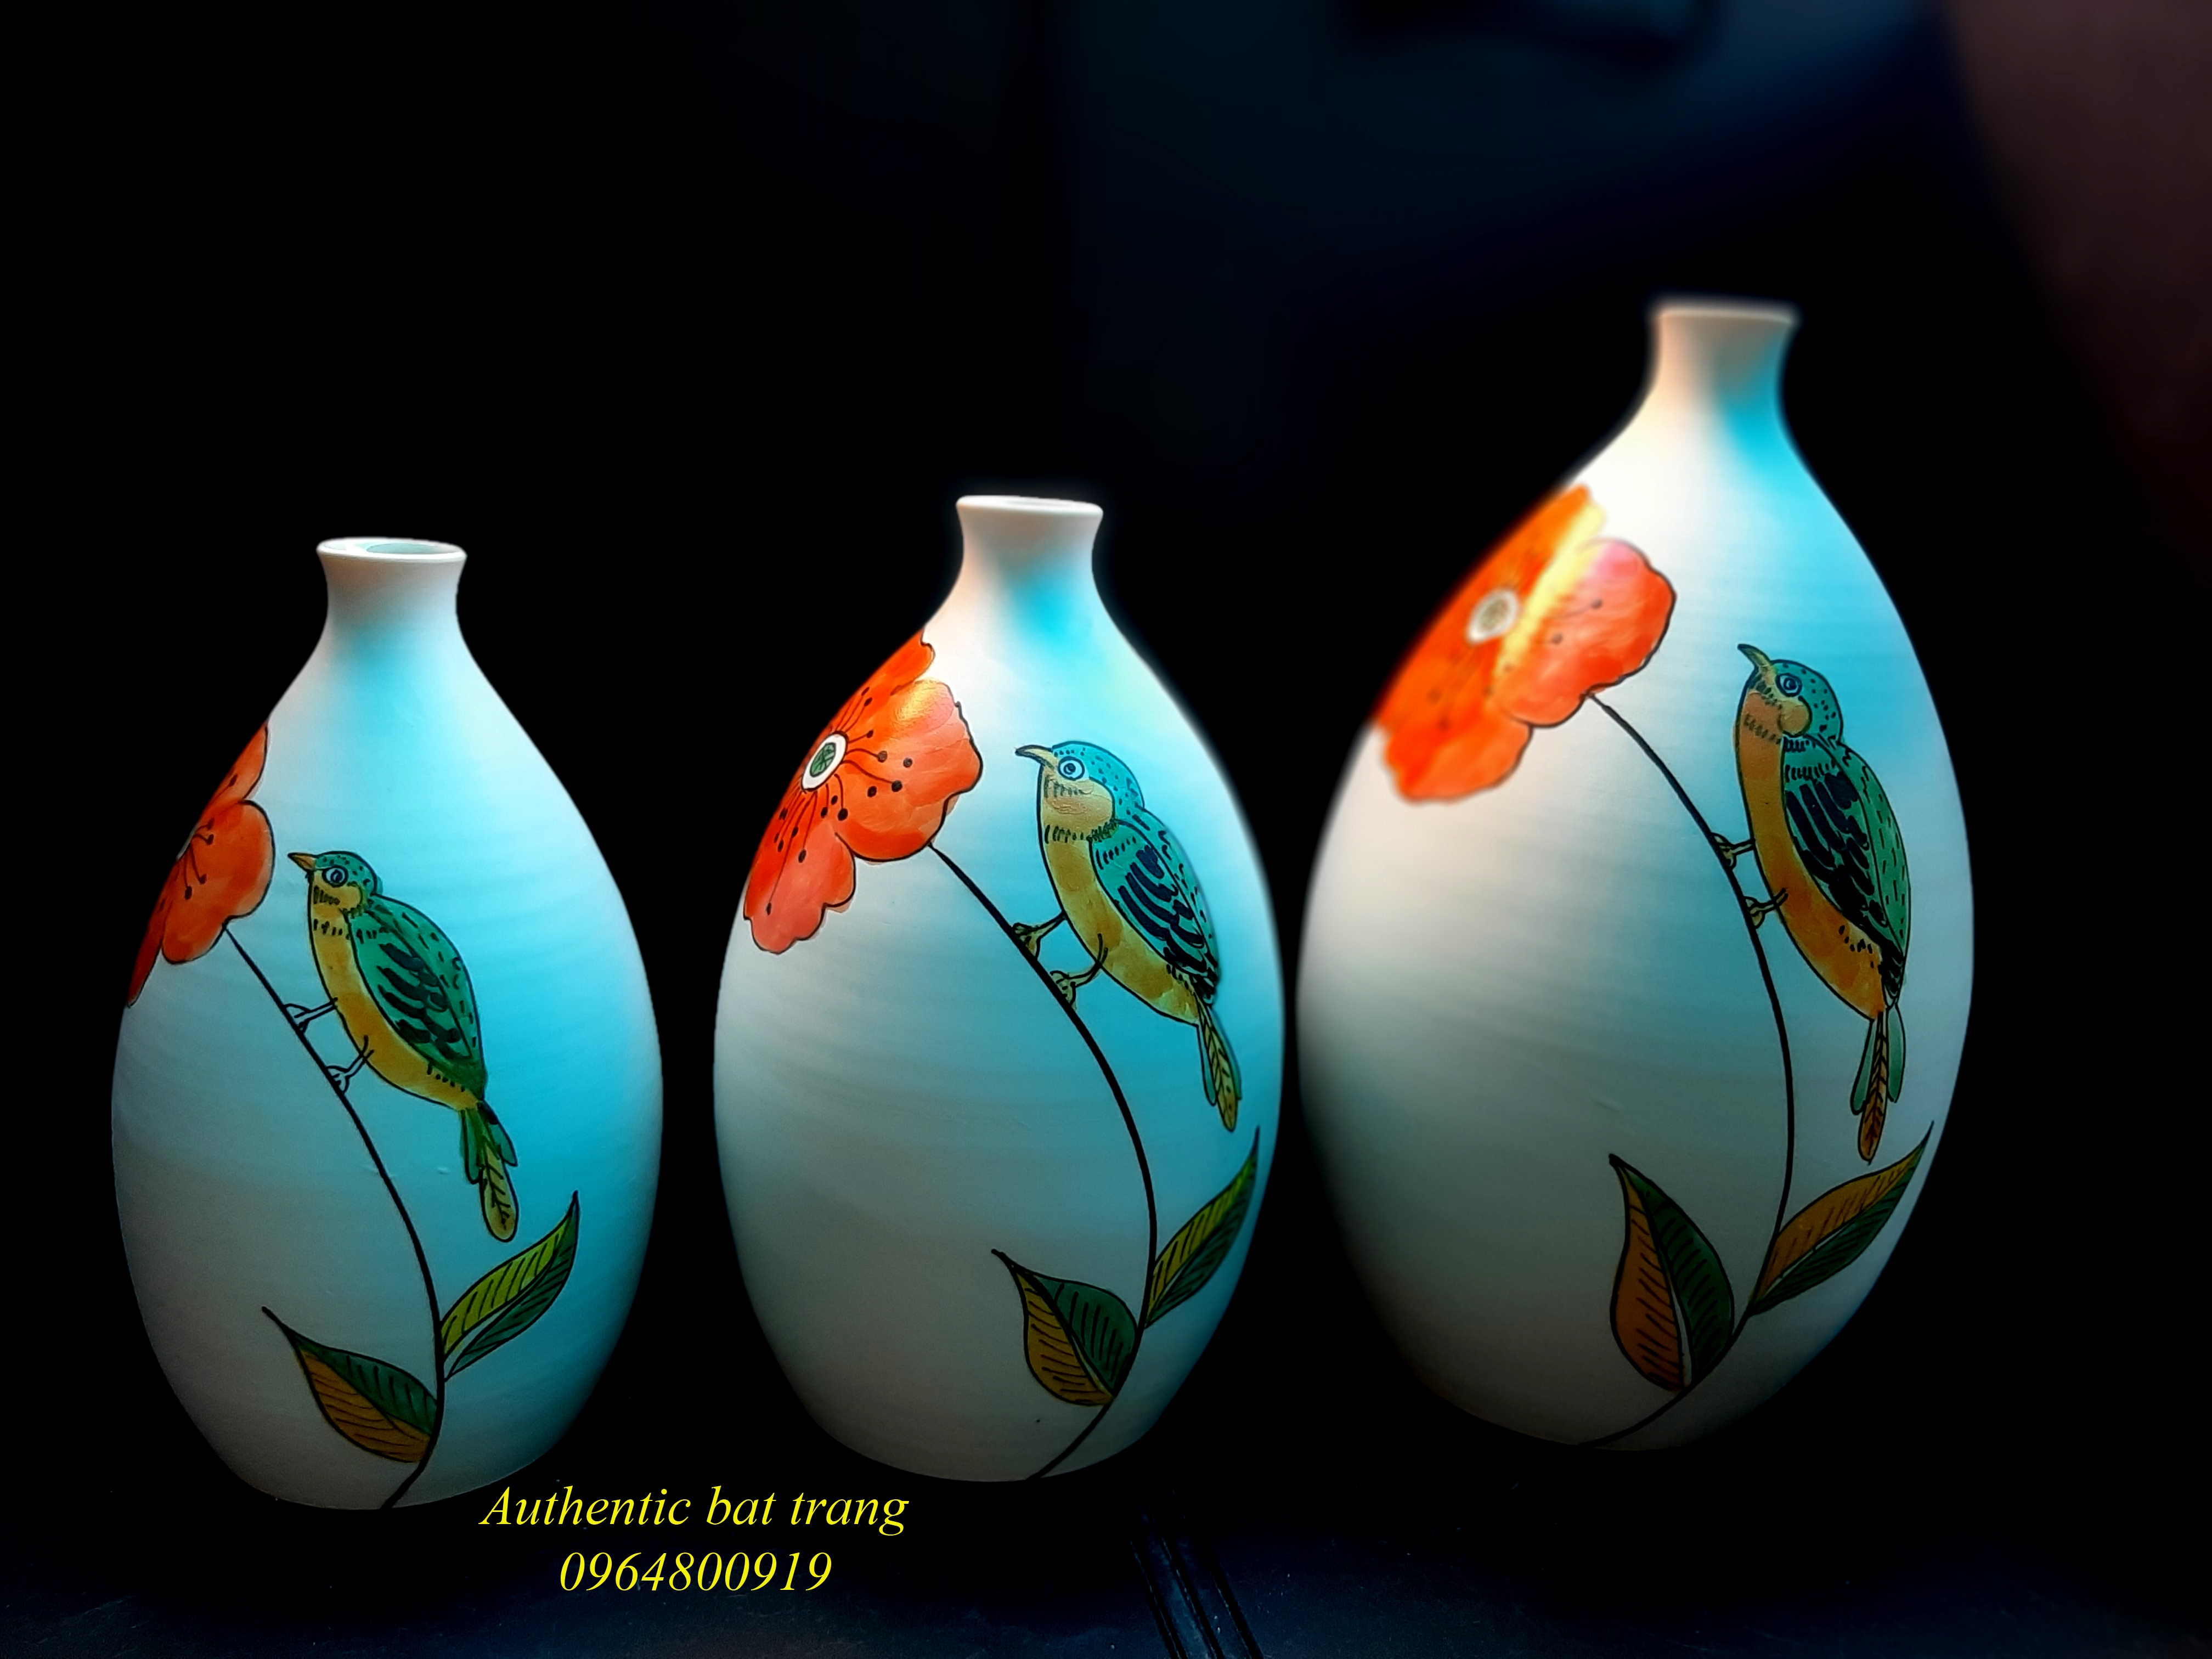 Ceramics vase set/Bộ bình gốm trang trí nhà cửa hàng thủ công vẽ tay sản xuất tại xưởng gốm Authentic bat trang